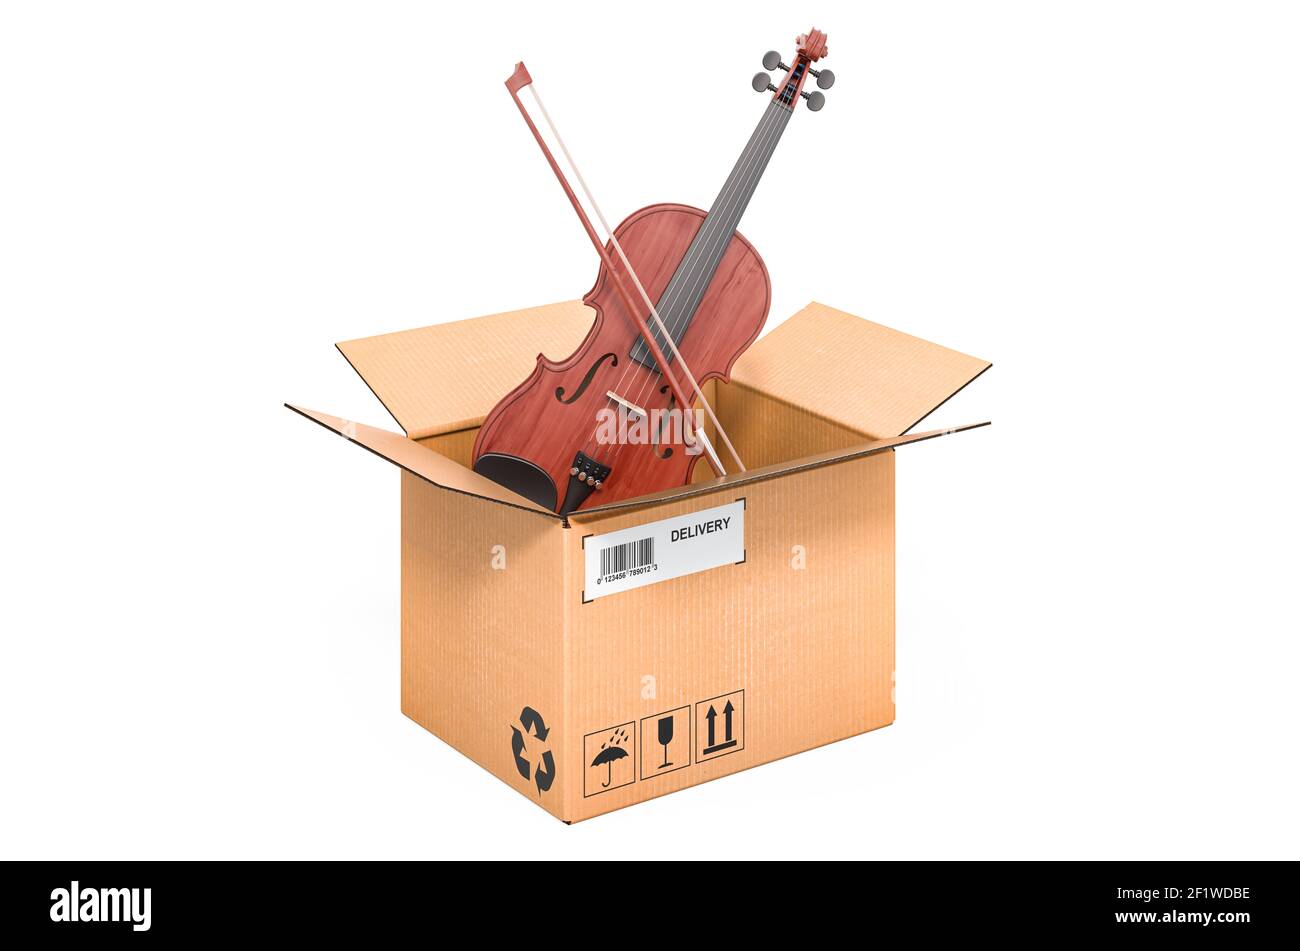 Violon et arc à l'intérieur de la boîte en carton, concept de livraison.  Rendu 3D isolé sur fond blanc Photo Stock - Alamy